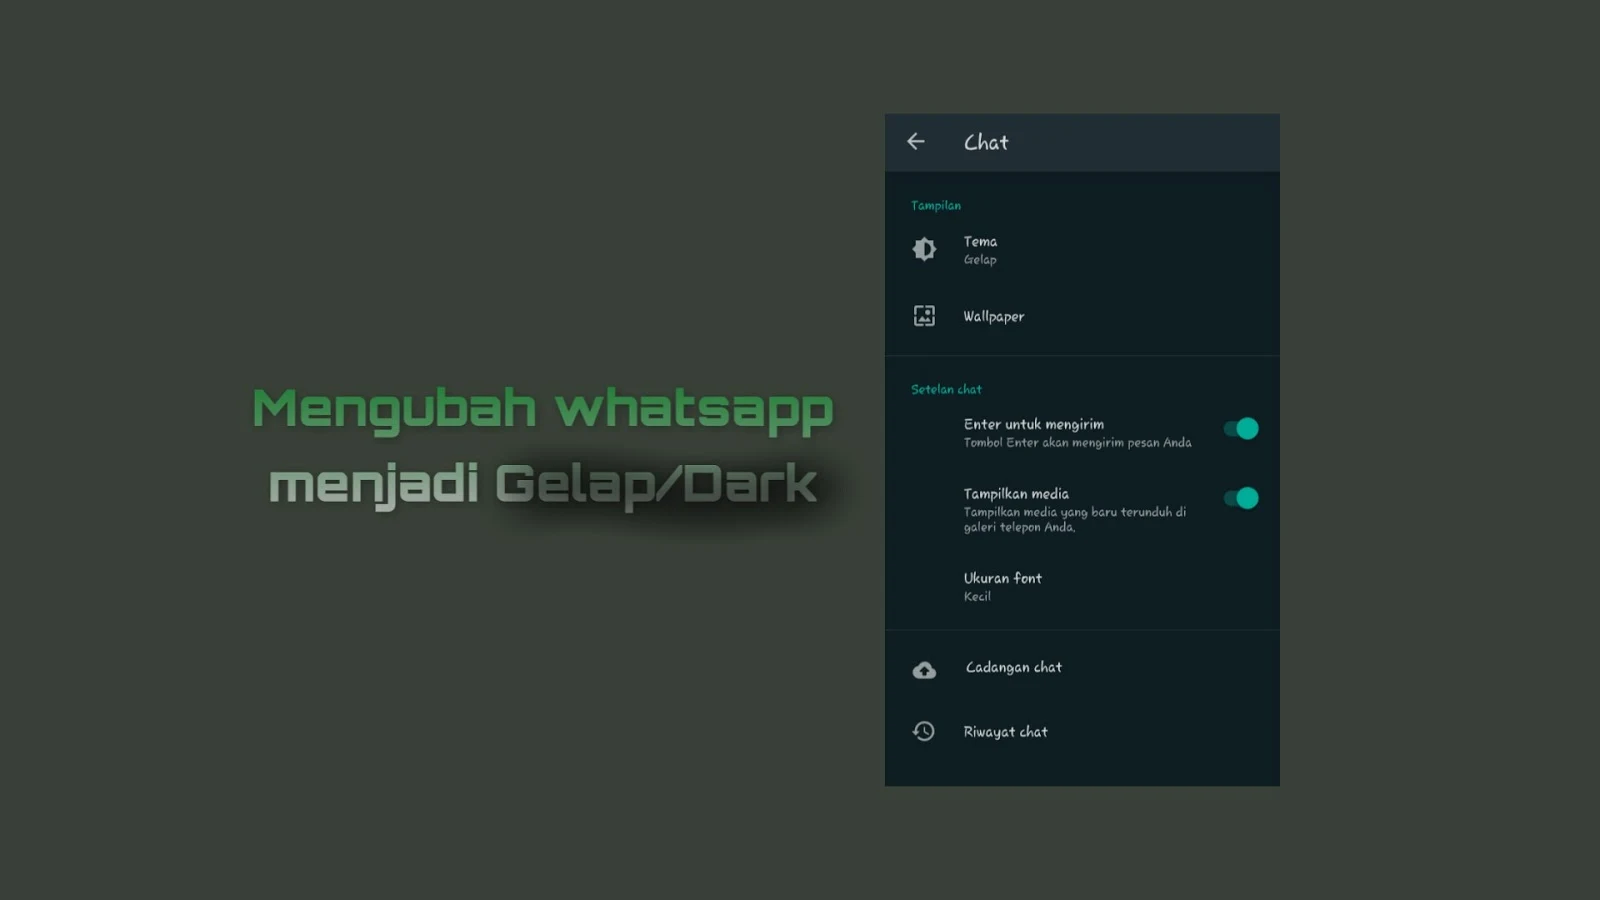 Whatsapp menjadi gelap